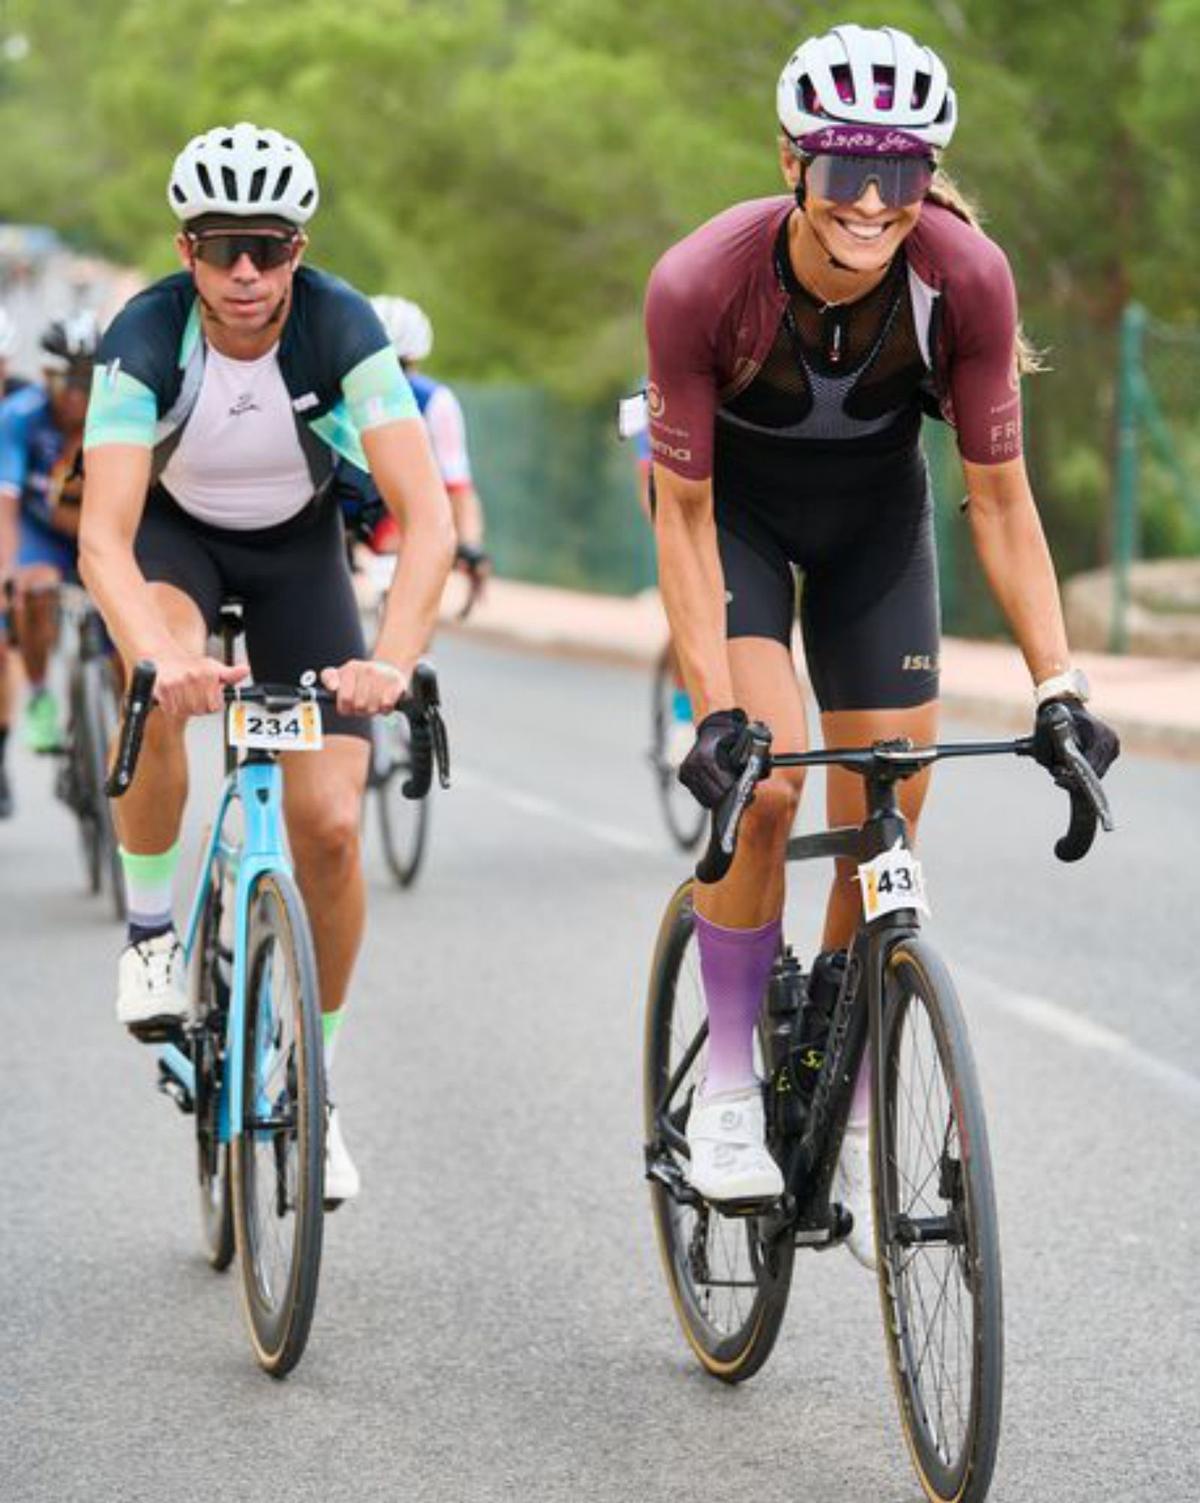 Marc Torres se corona en una vigésima Vuelta a Ibiza para la historia   